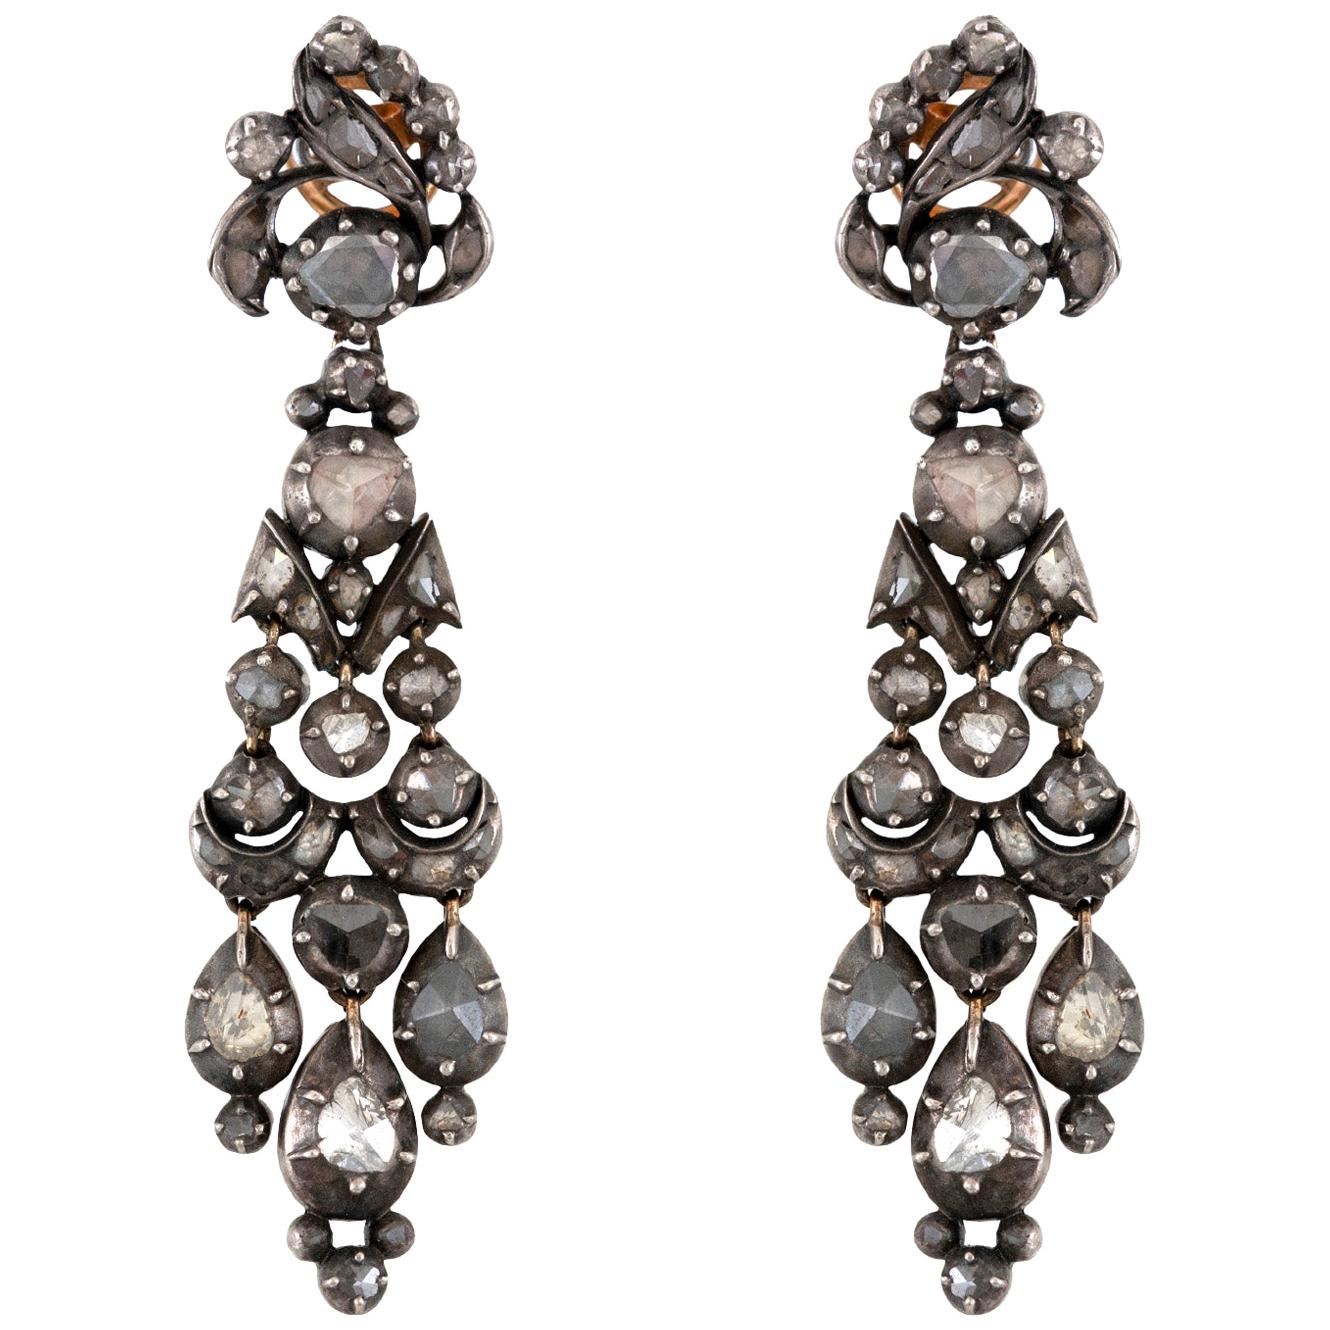 Georgian Chandelier Earrings with Rose Cut Diamonds